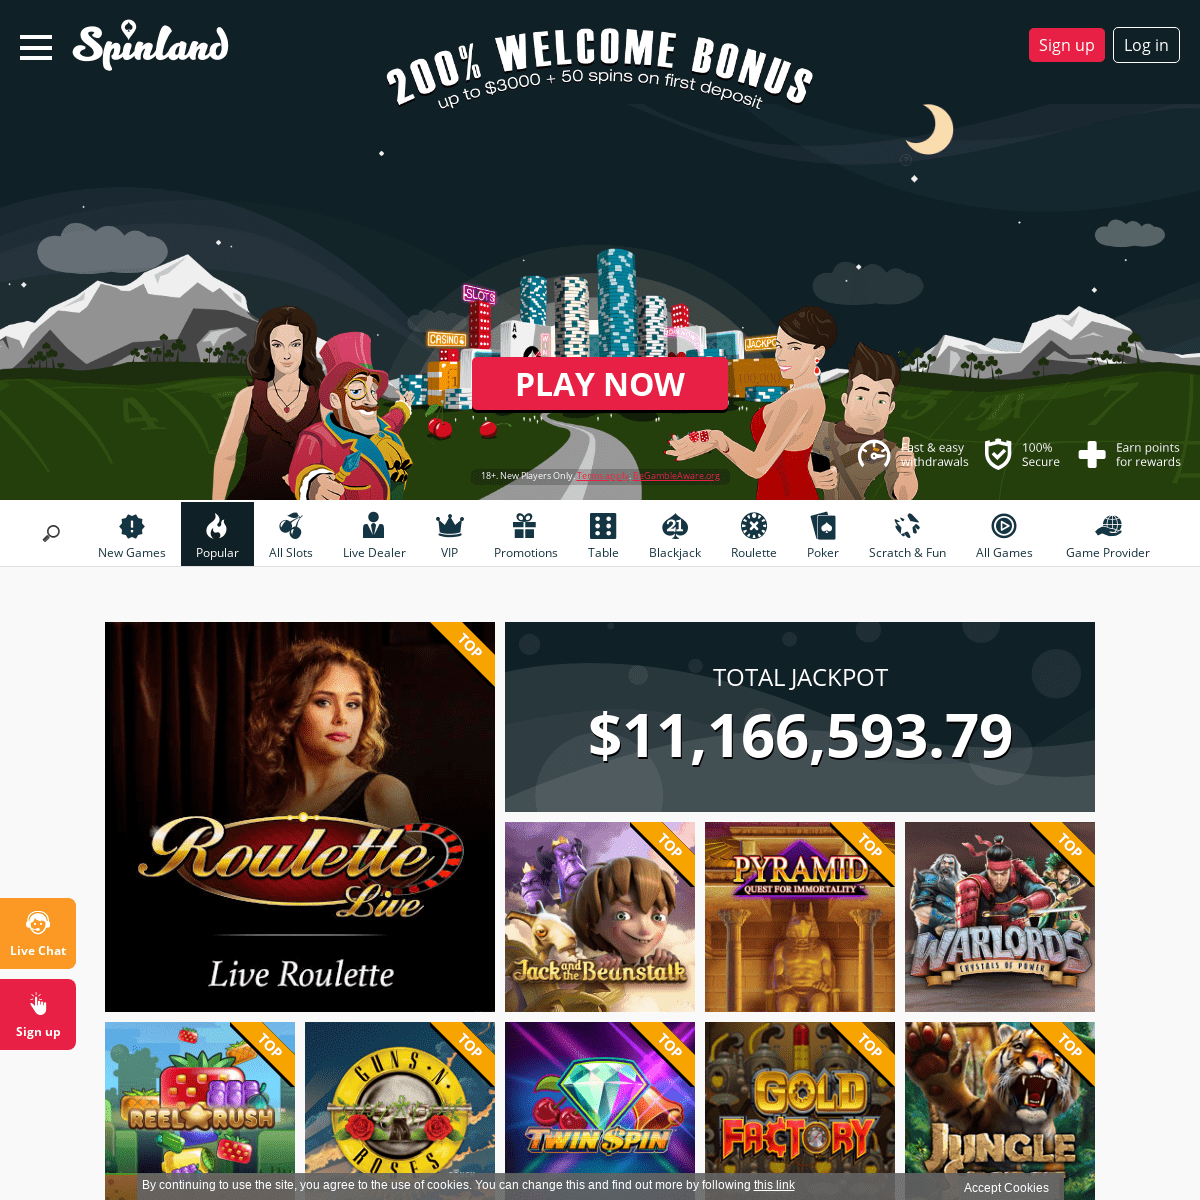 SpinLand | Online Casino | 200% + 50 Bonus Spins